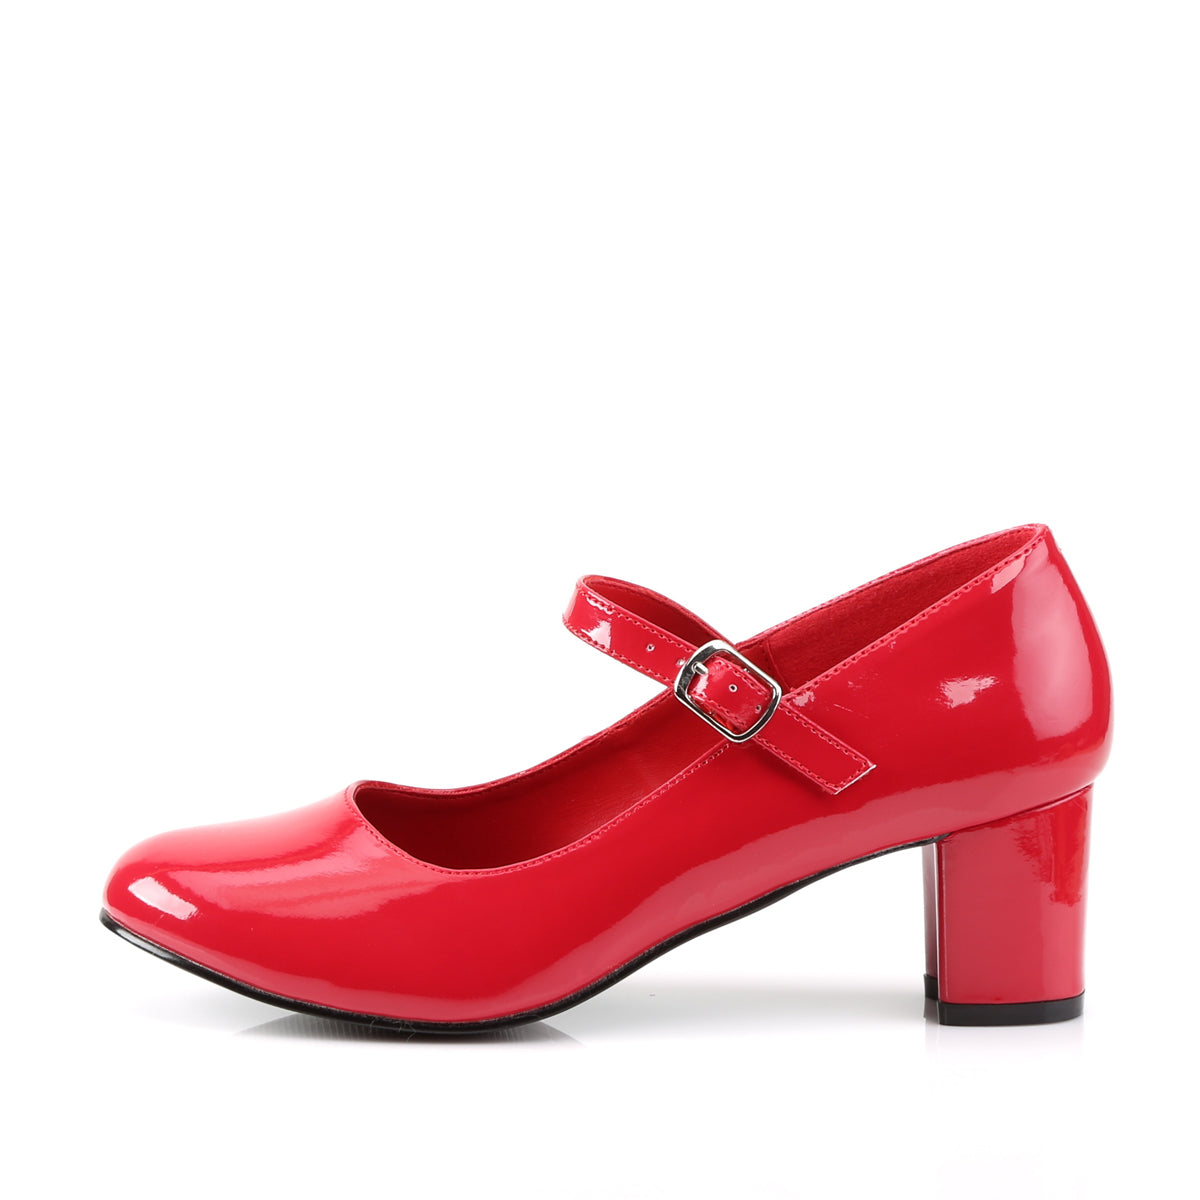 SCHOOLGIRL-50 2 Inch Heel Red Women's Costume Shoes Funtasma Costume Shoes 